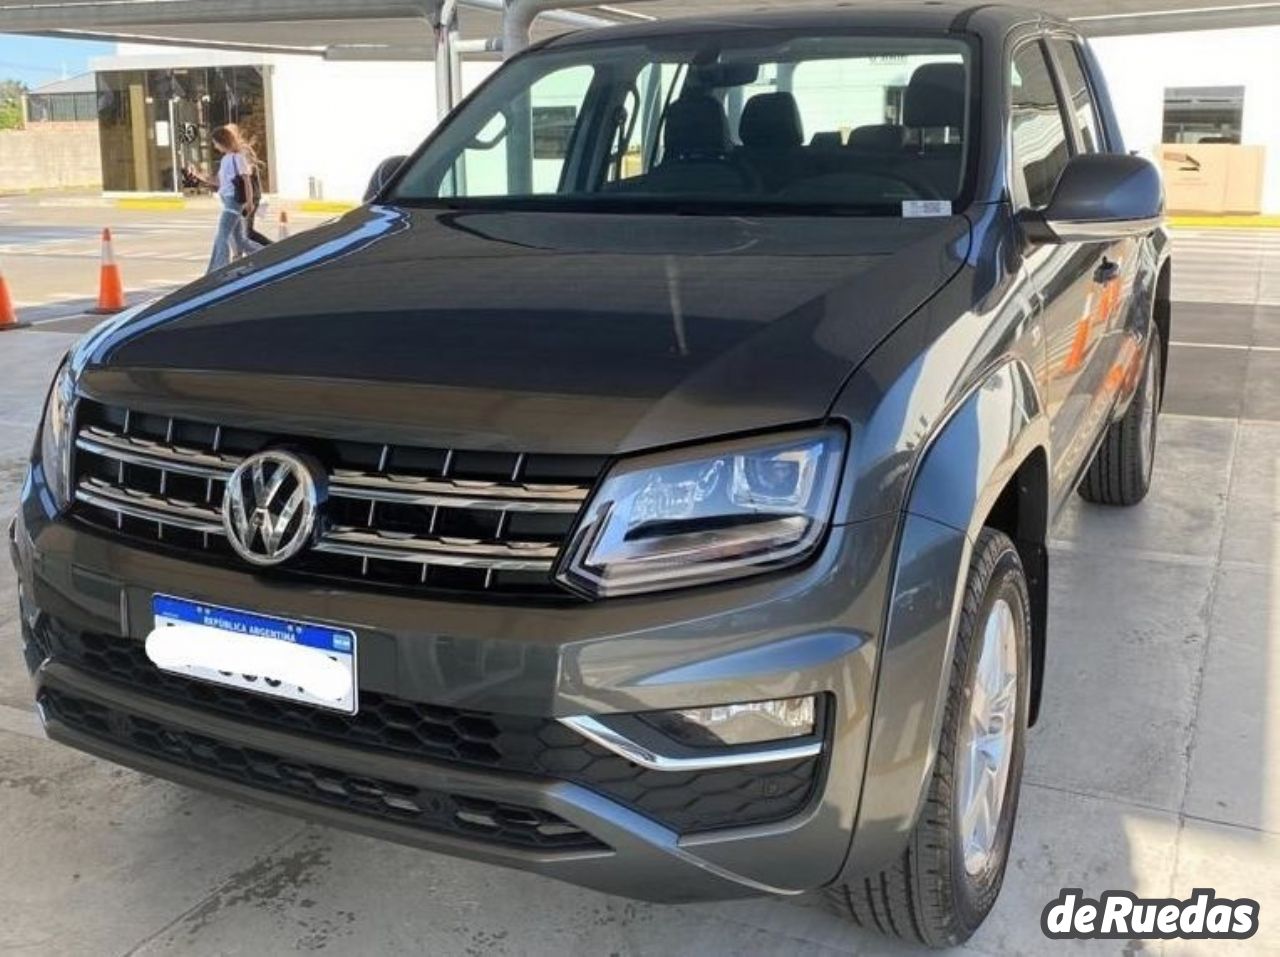 Volkswagen Amarok Nueva en Córdoba, deRuedas